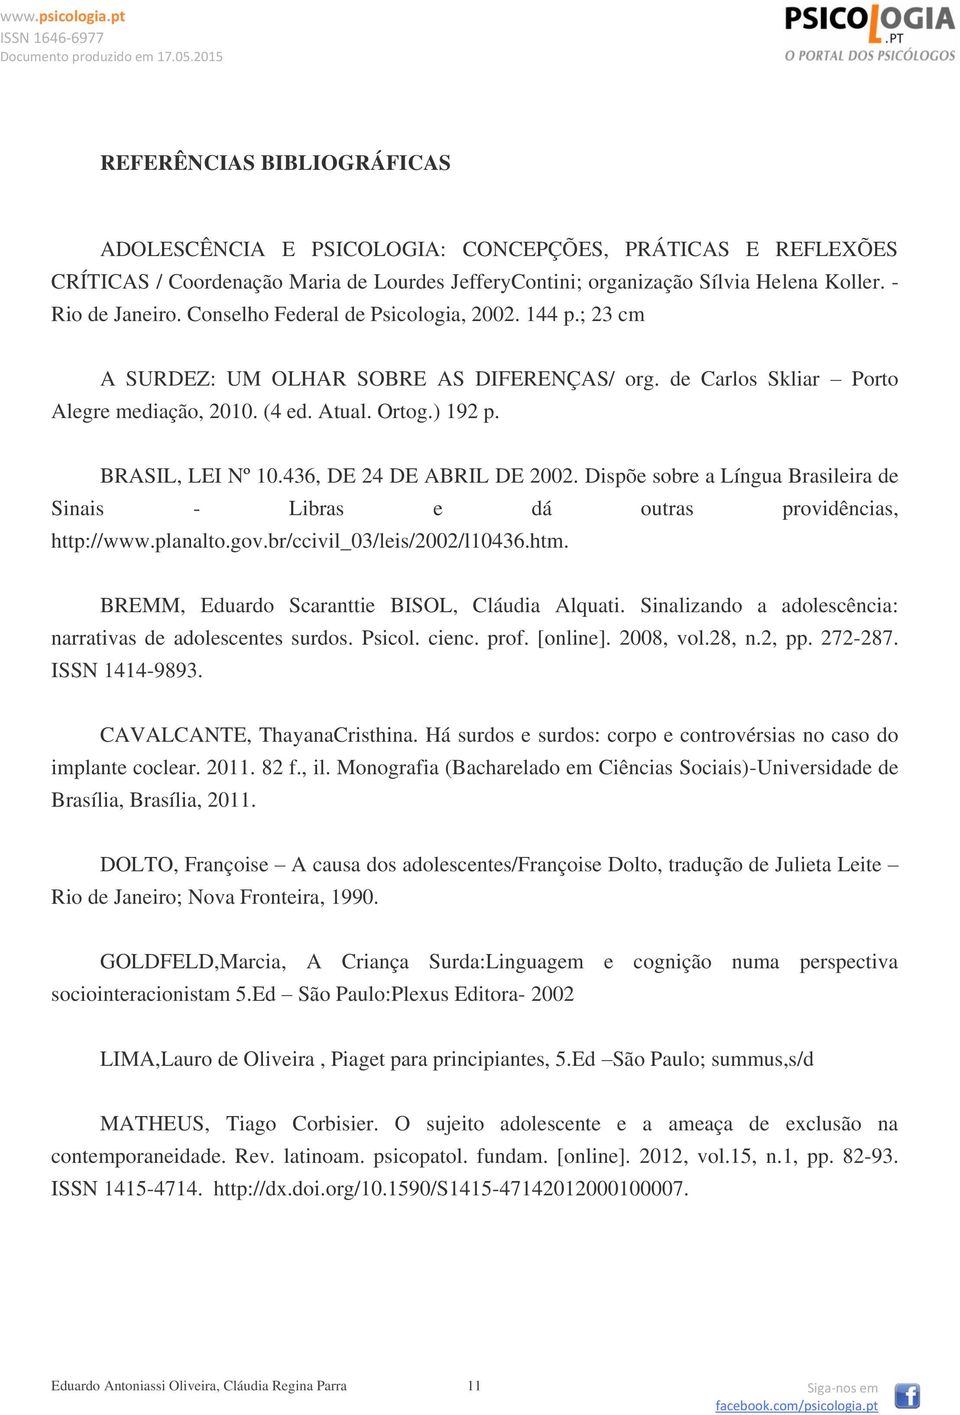 436, DE 24 DE ABRIL DE 2002. Dispõe sobre a Língua Brasileira de Sinais - Libras e dá outras providências, http://www.planalto.gov.br/ccivil_03/leis/2002/l10436.htm.